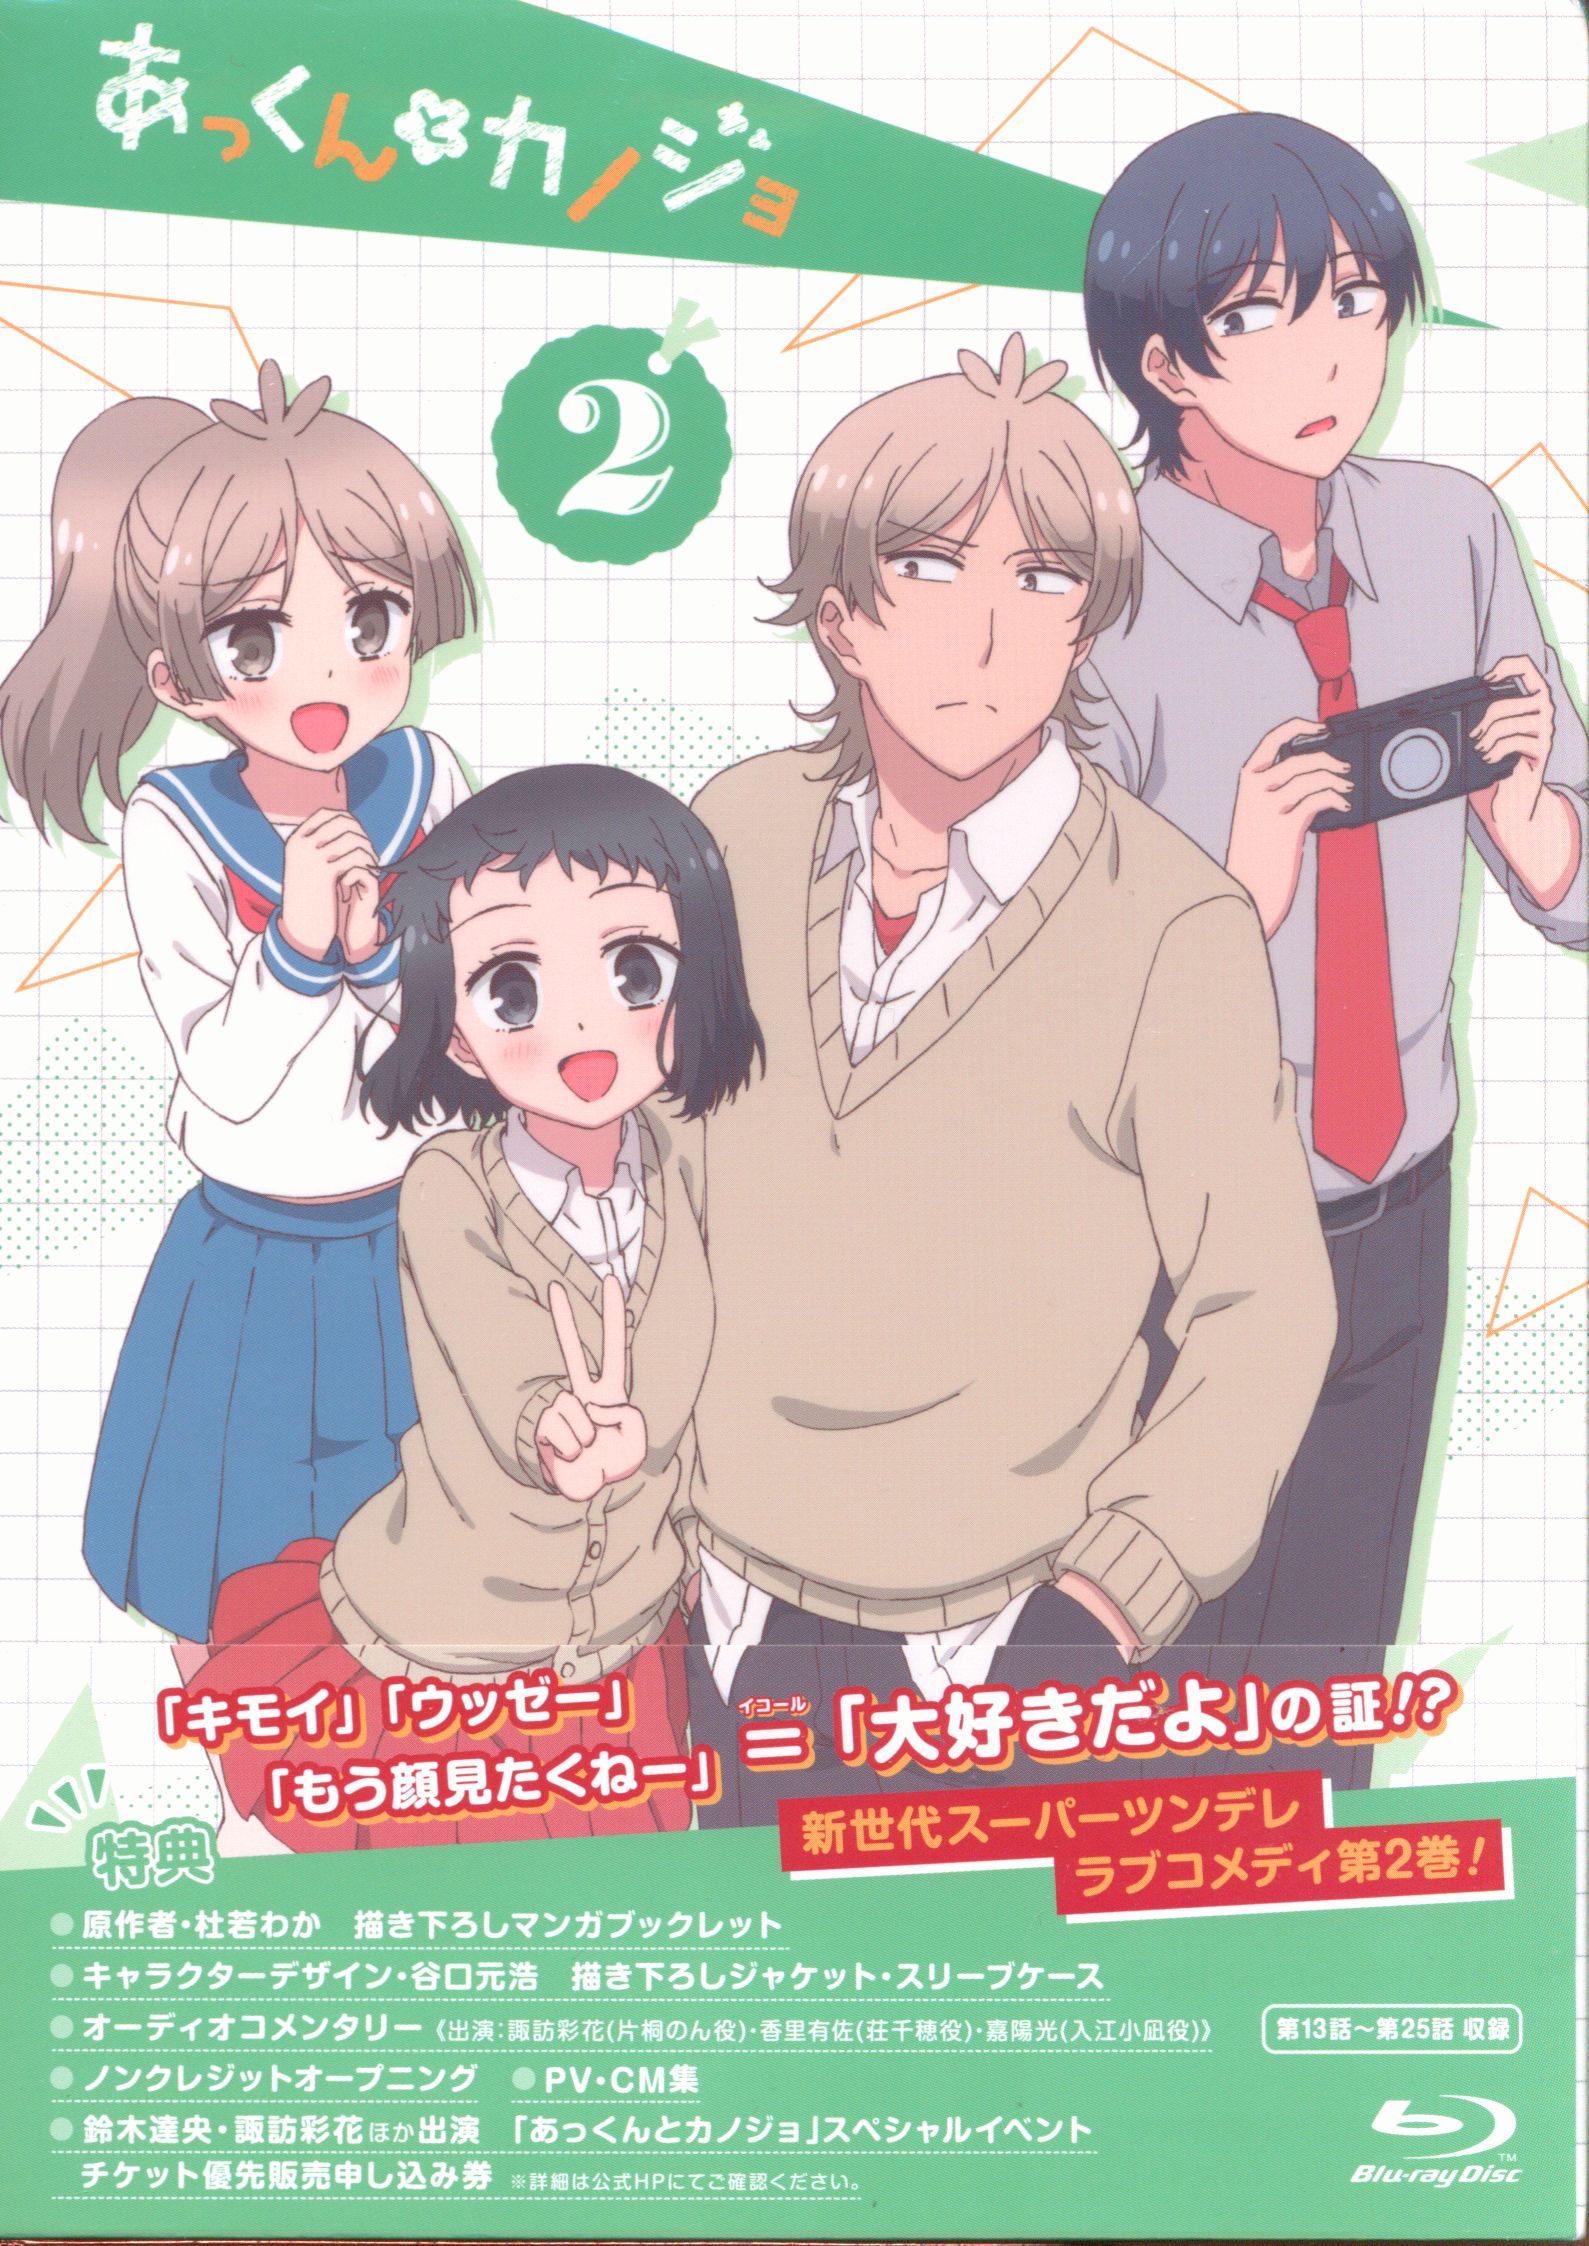 Akkun To Kanojo Manga ( show all stock )